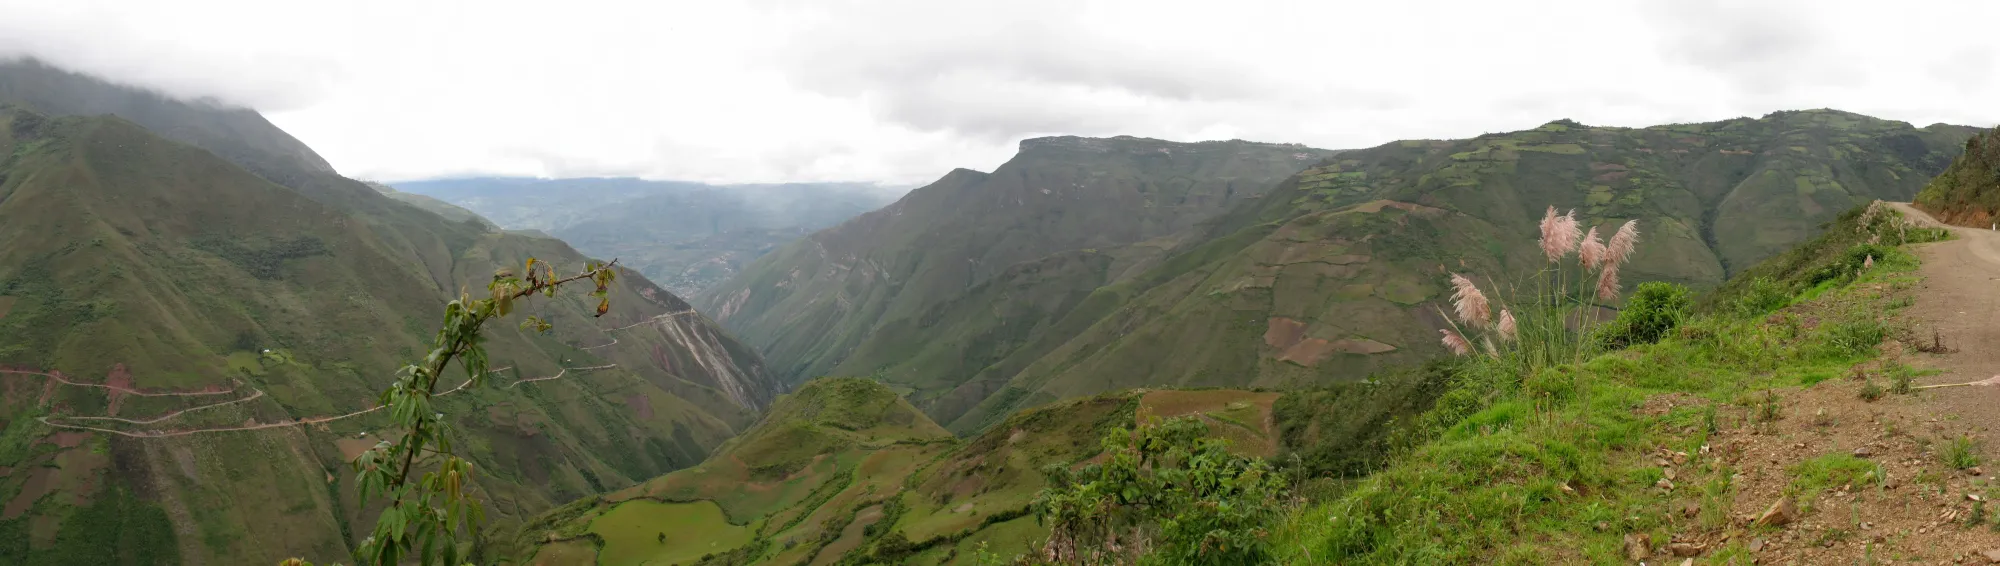 Peruanisches Hochland